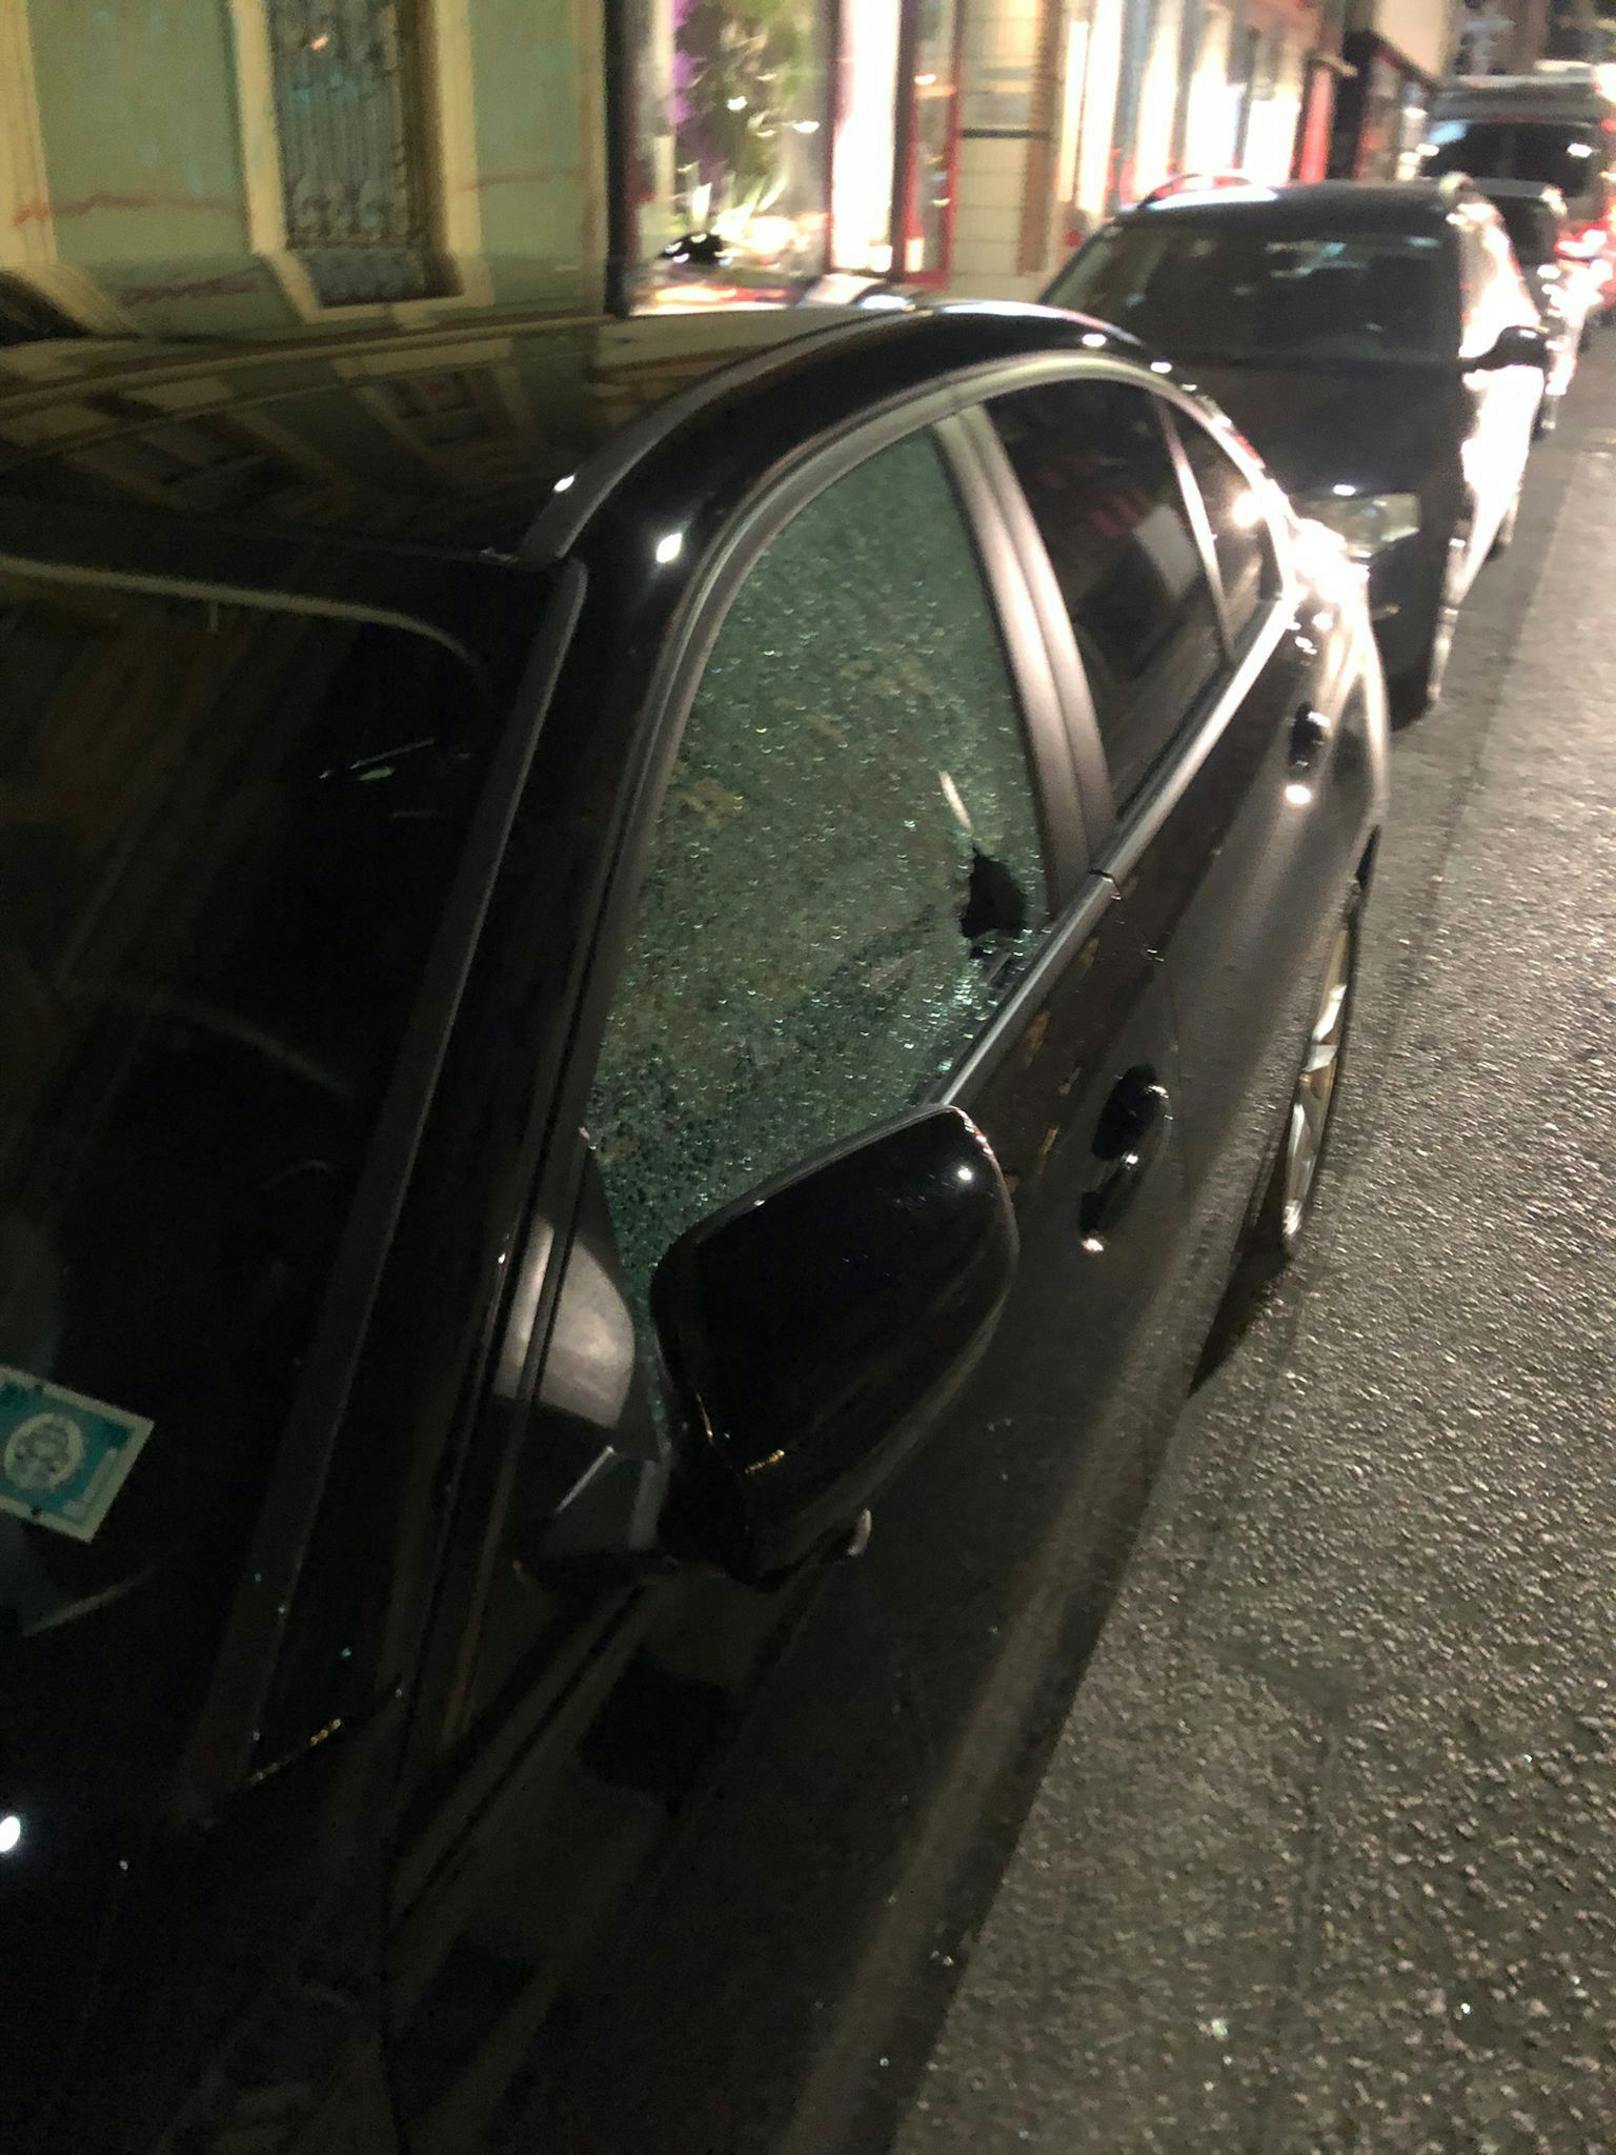 Samstagabend demonstrierten rund 30 vermummten Personen vor der Bude der rechten Studentenverbindung Olympia. Auch zwei Autos wurden beschädigt.